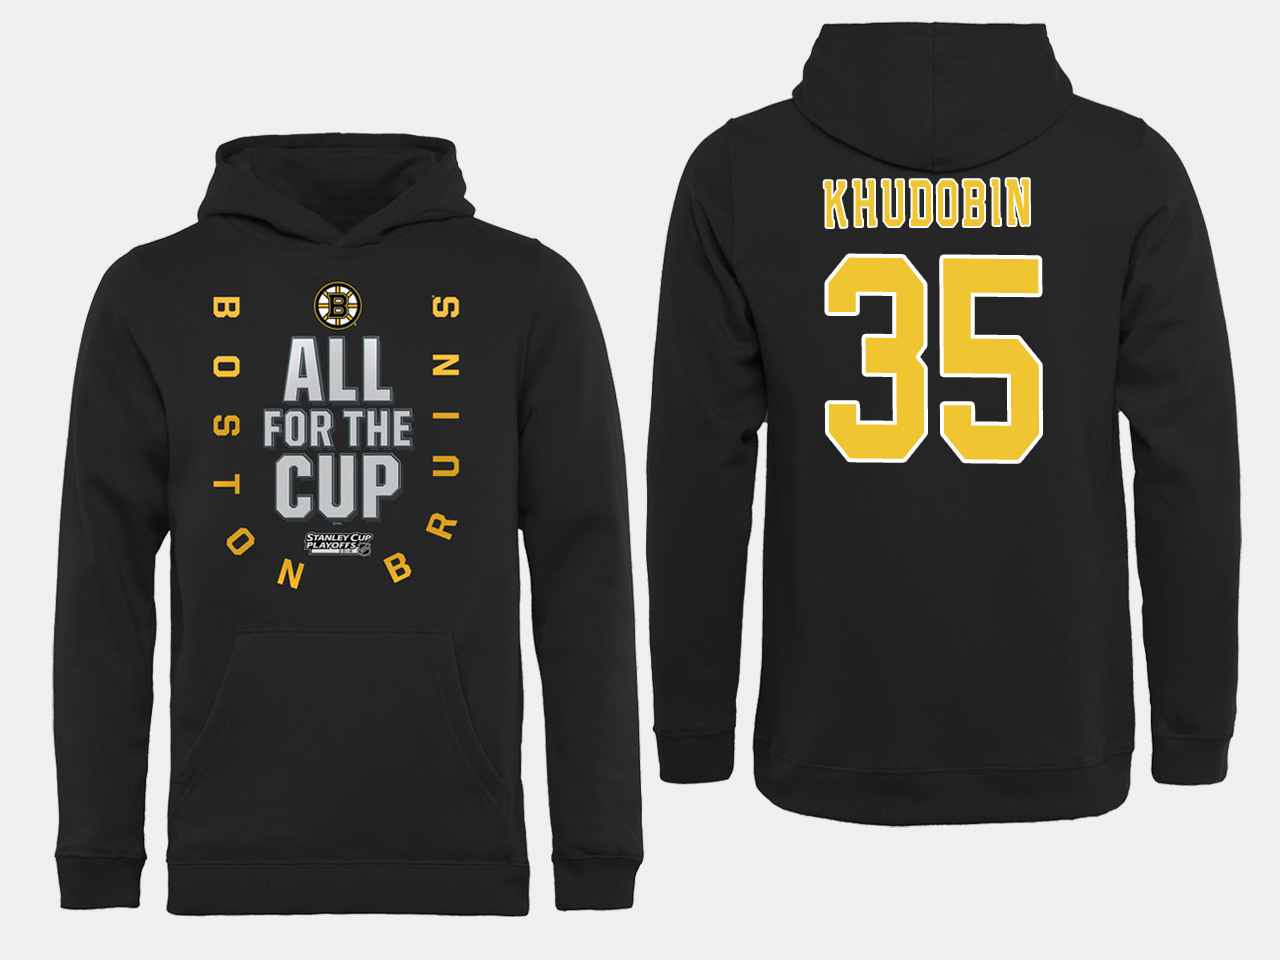 NHL Men Boston Bruins #35 Khudobin Black All for the Cup Hoodie